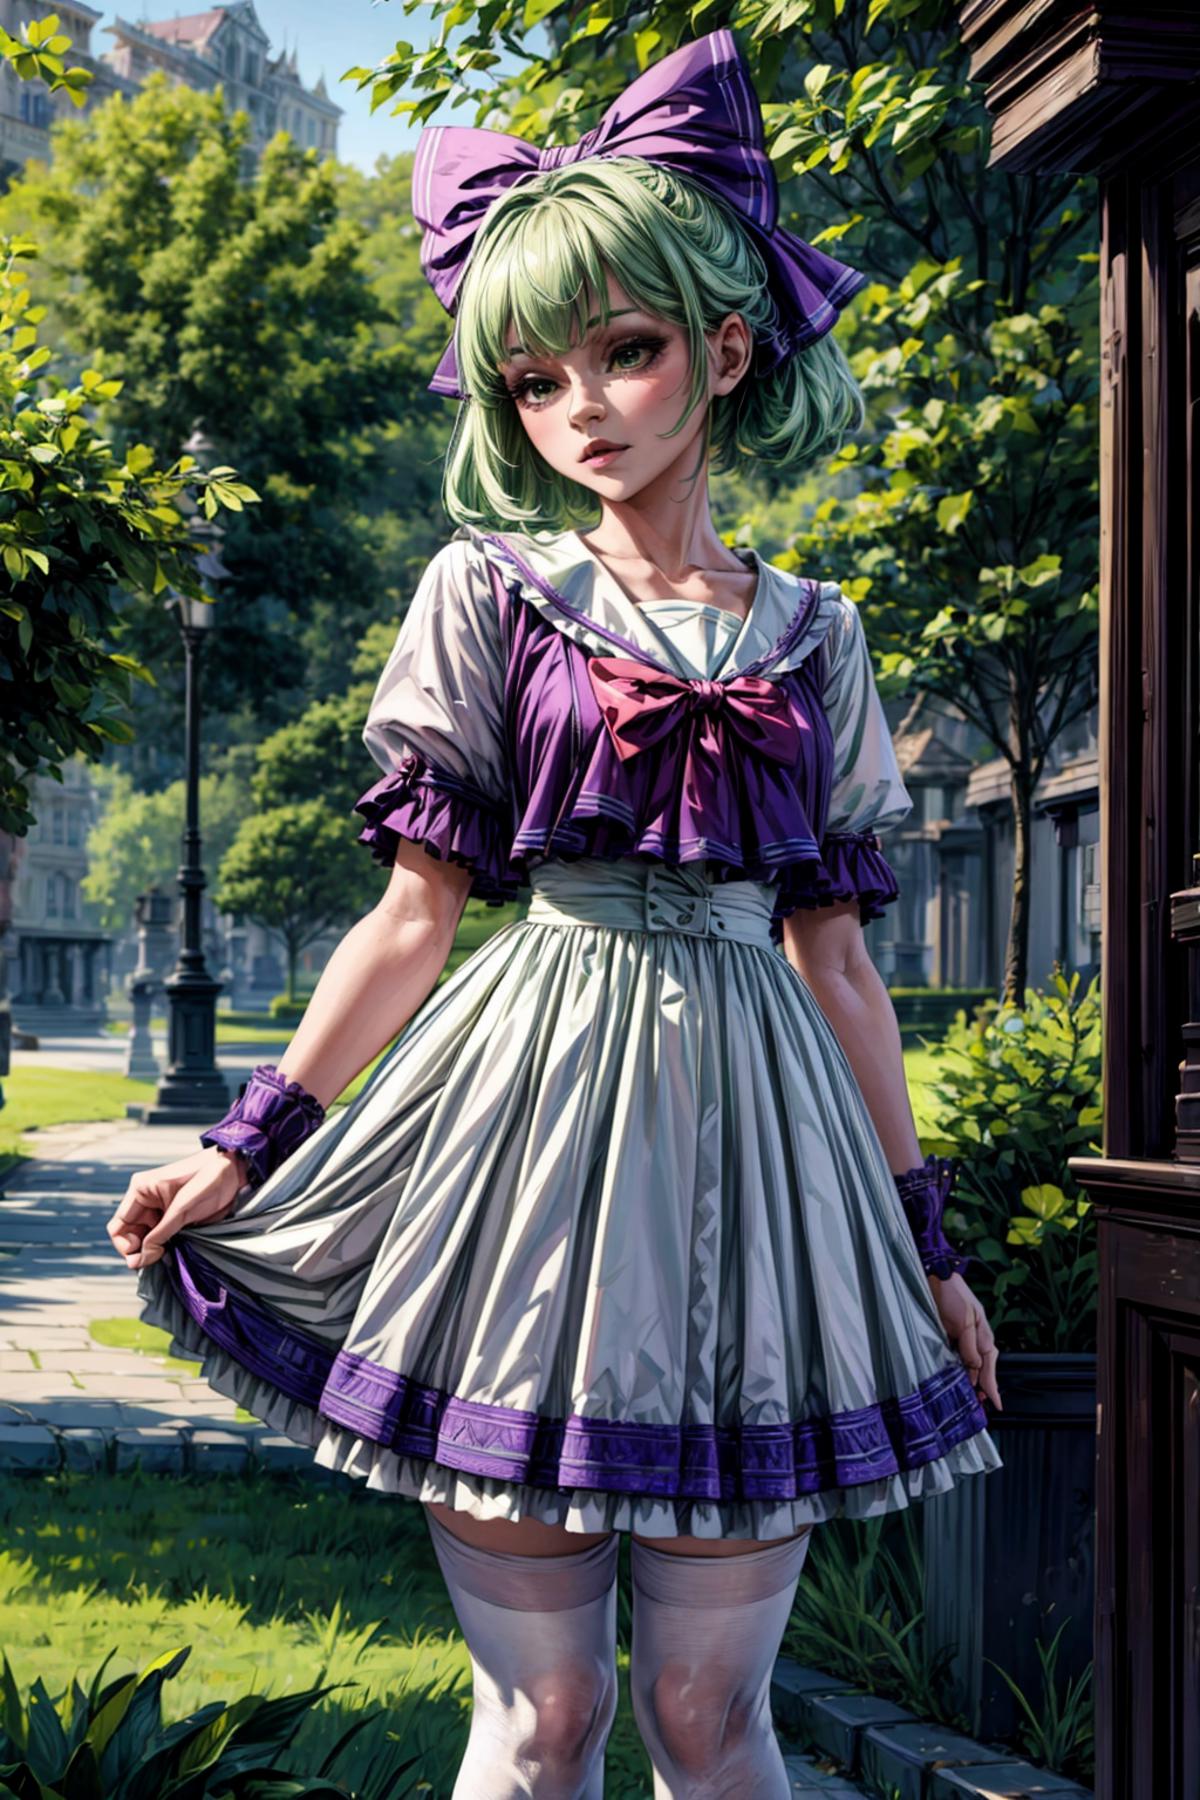 Sailor Dress image by Blackzerker